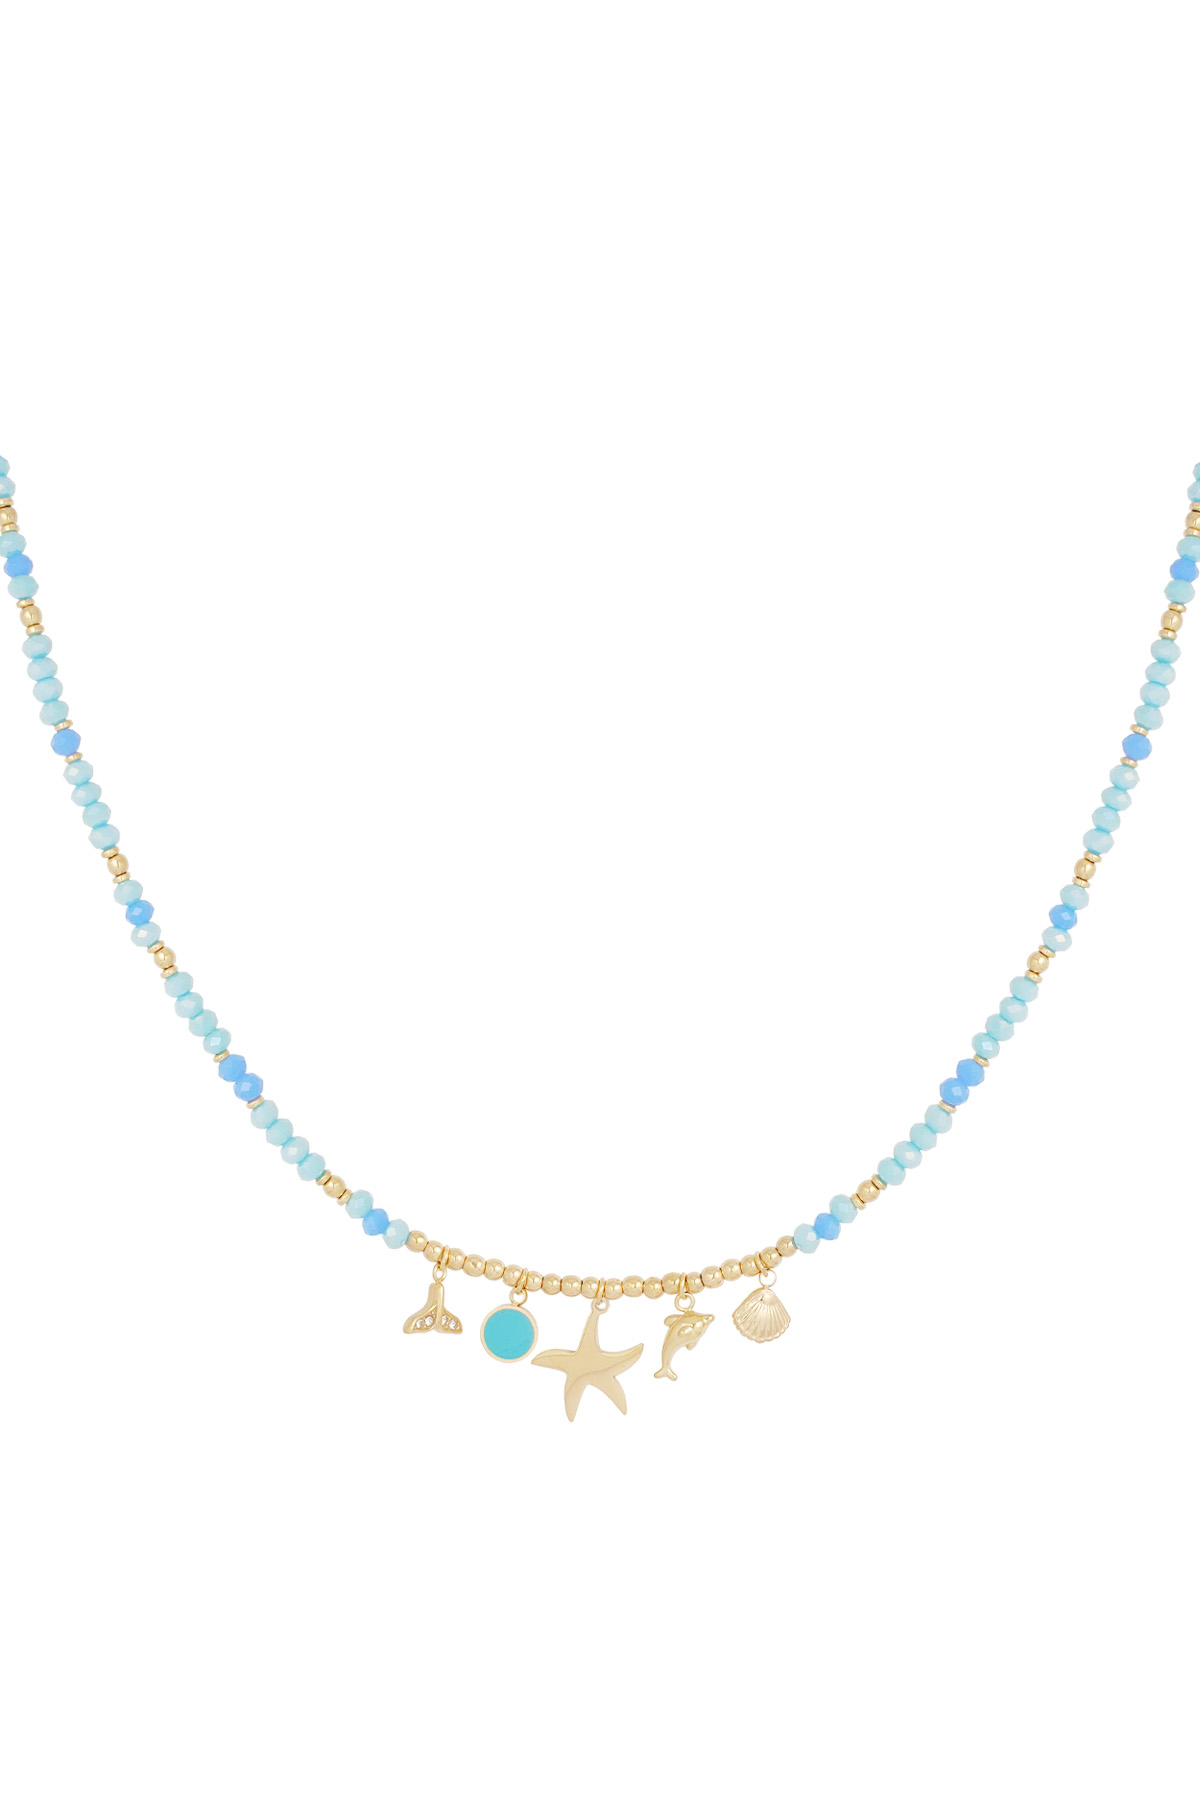 Necklace ocean blues - blue gold